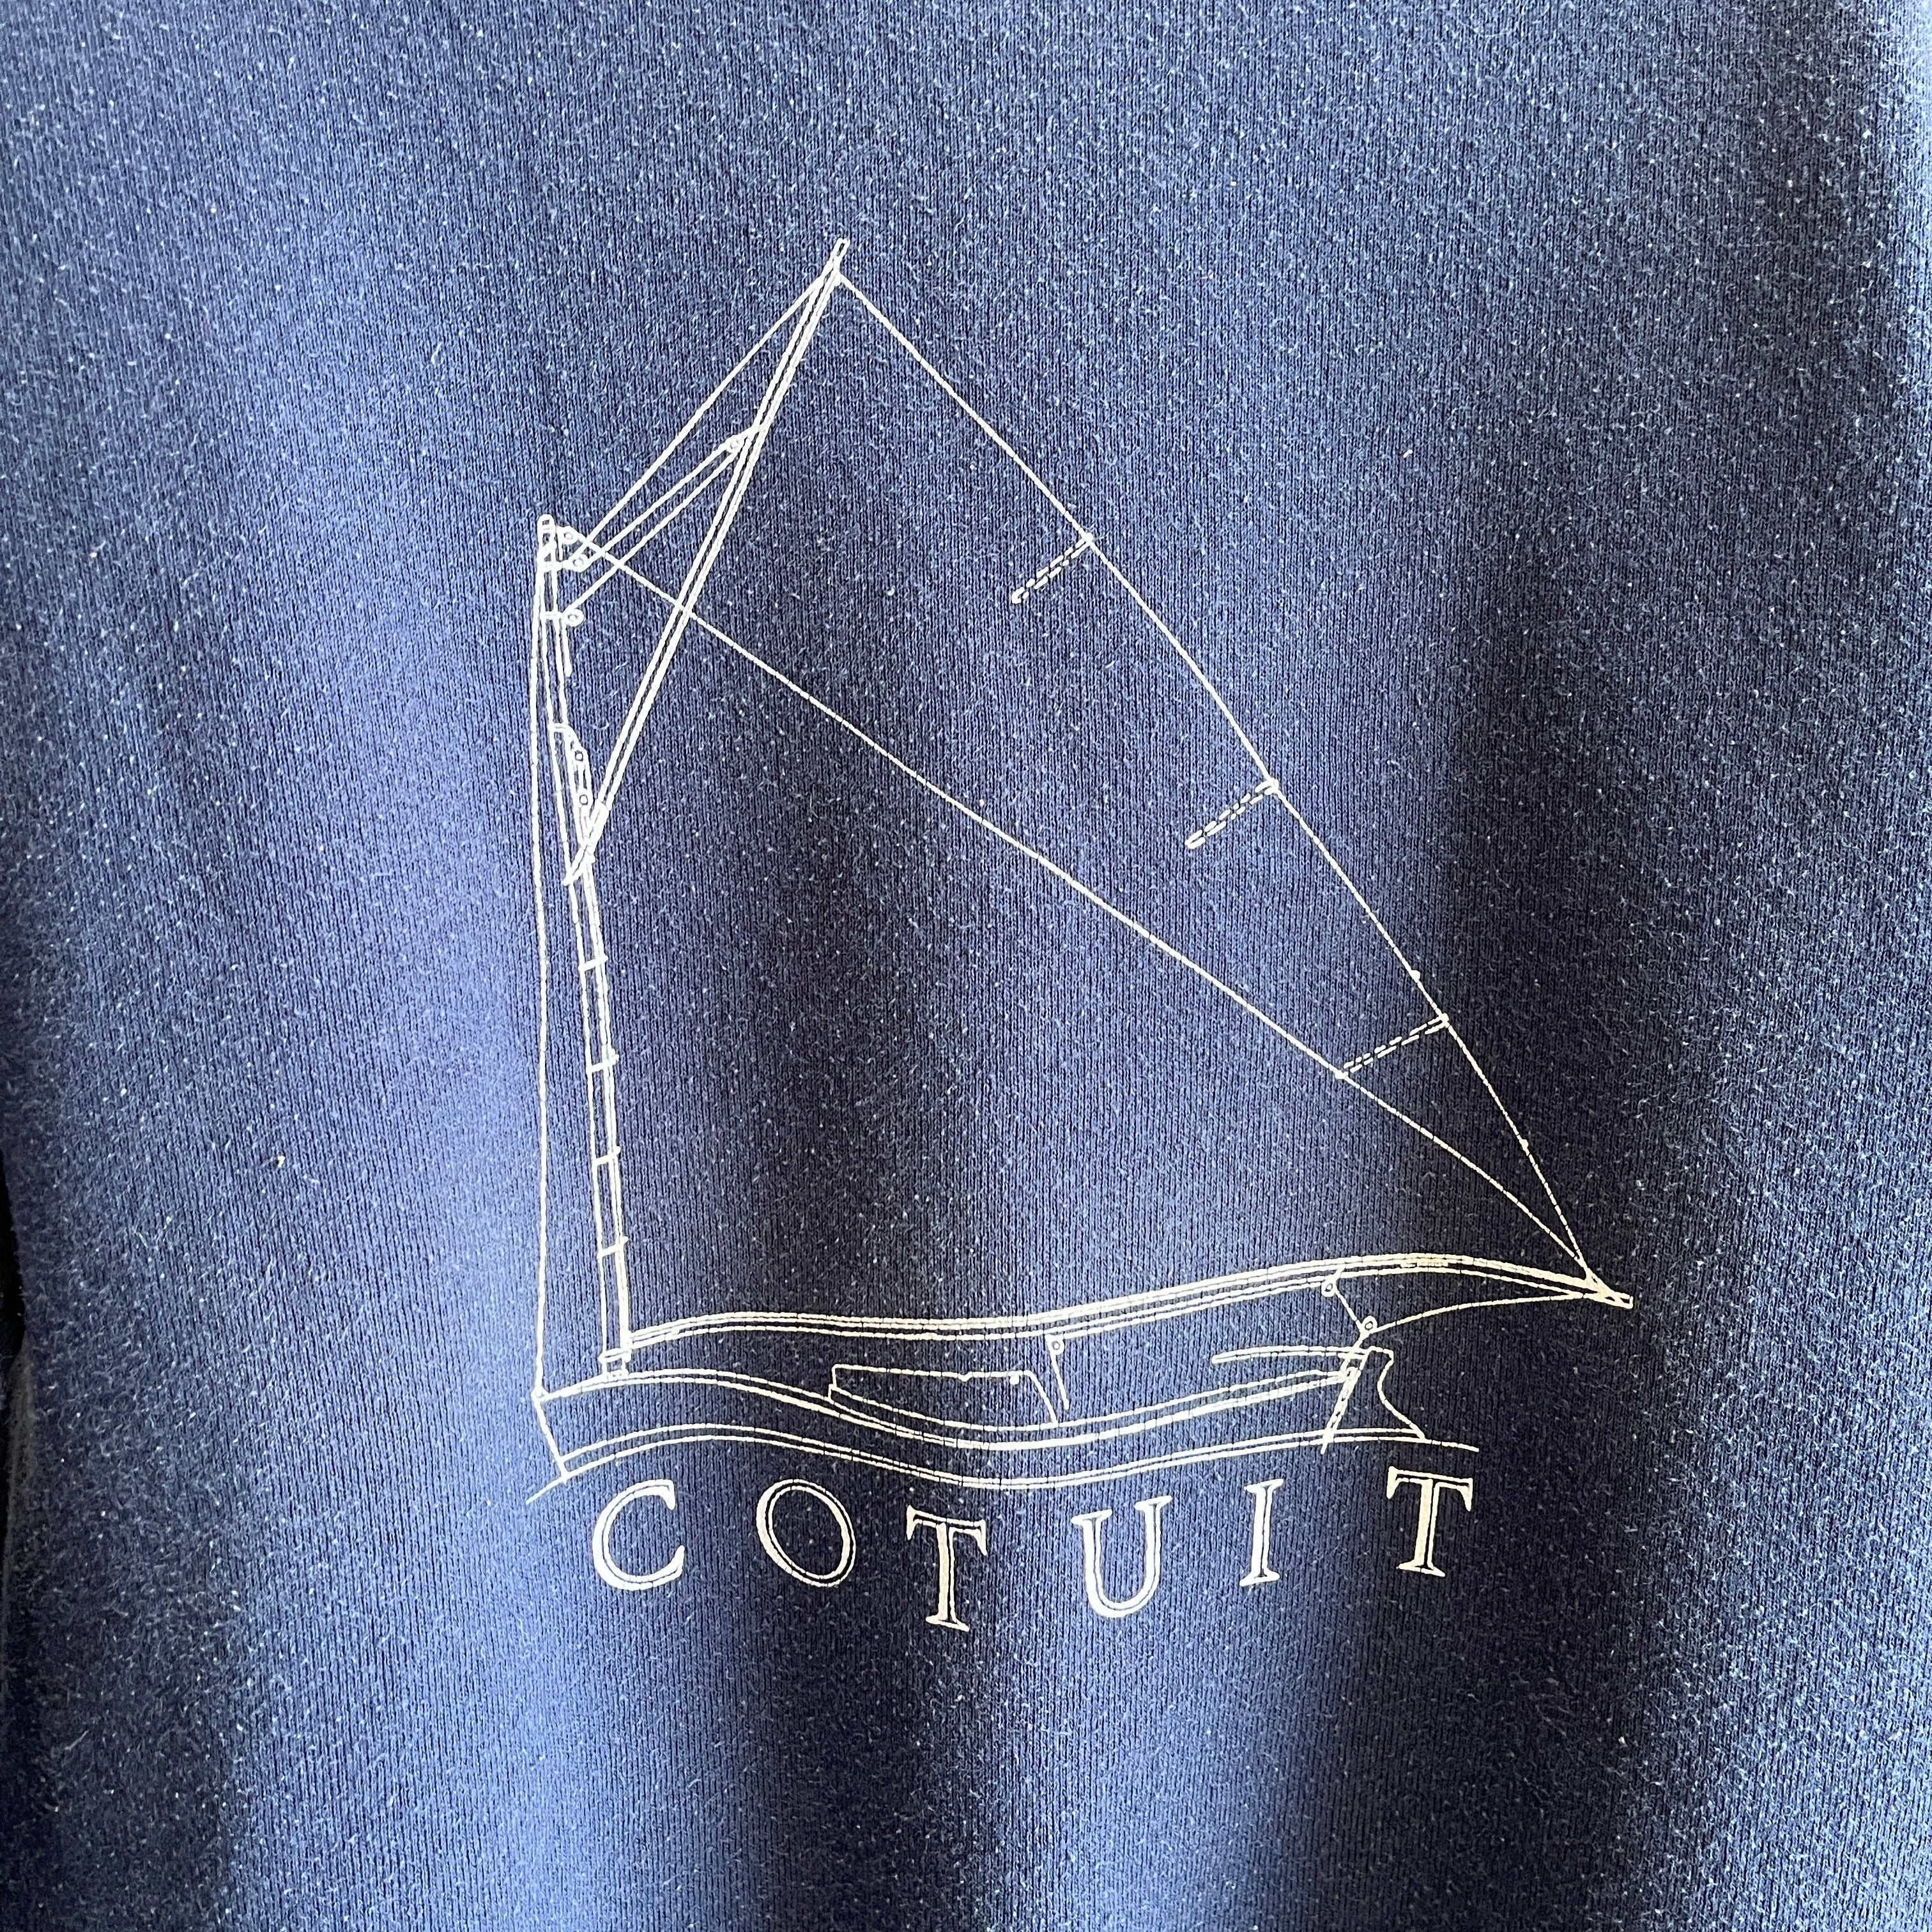 Sweat Cotuit (Cape Cod) des années 1980